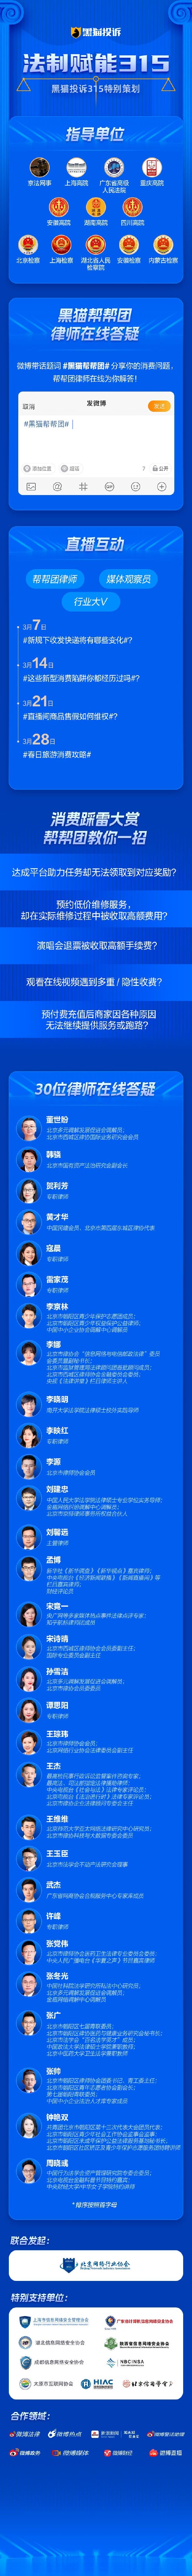 高通：鉴于宏观经济和需求环境的不确定性将开启裁员 撤离上海消息不实